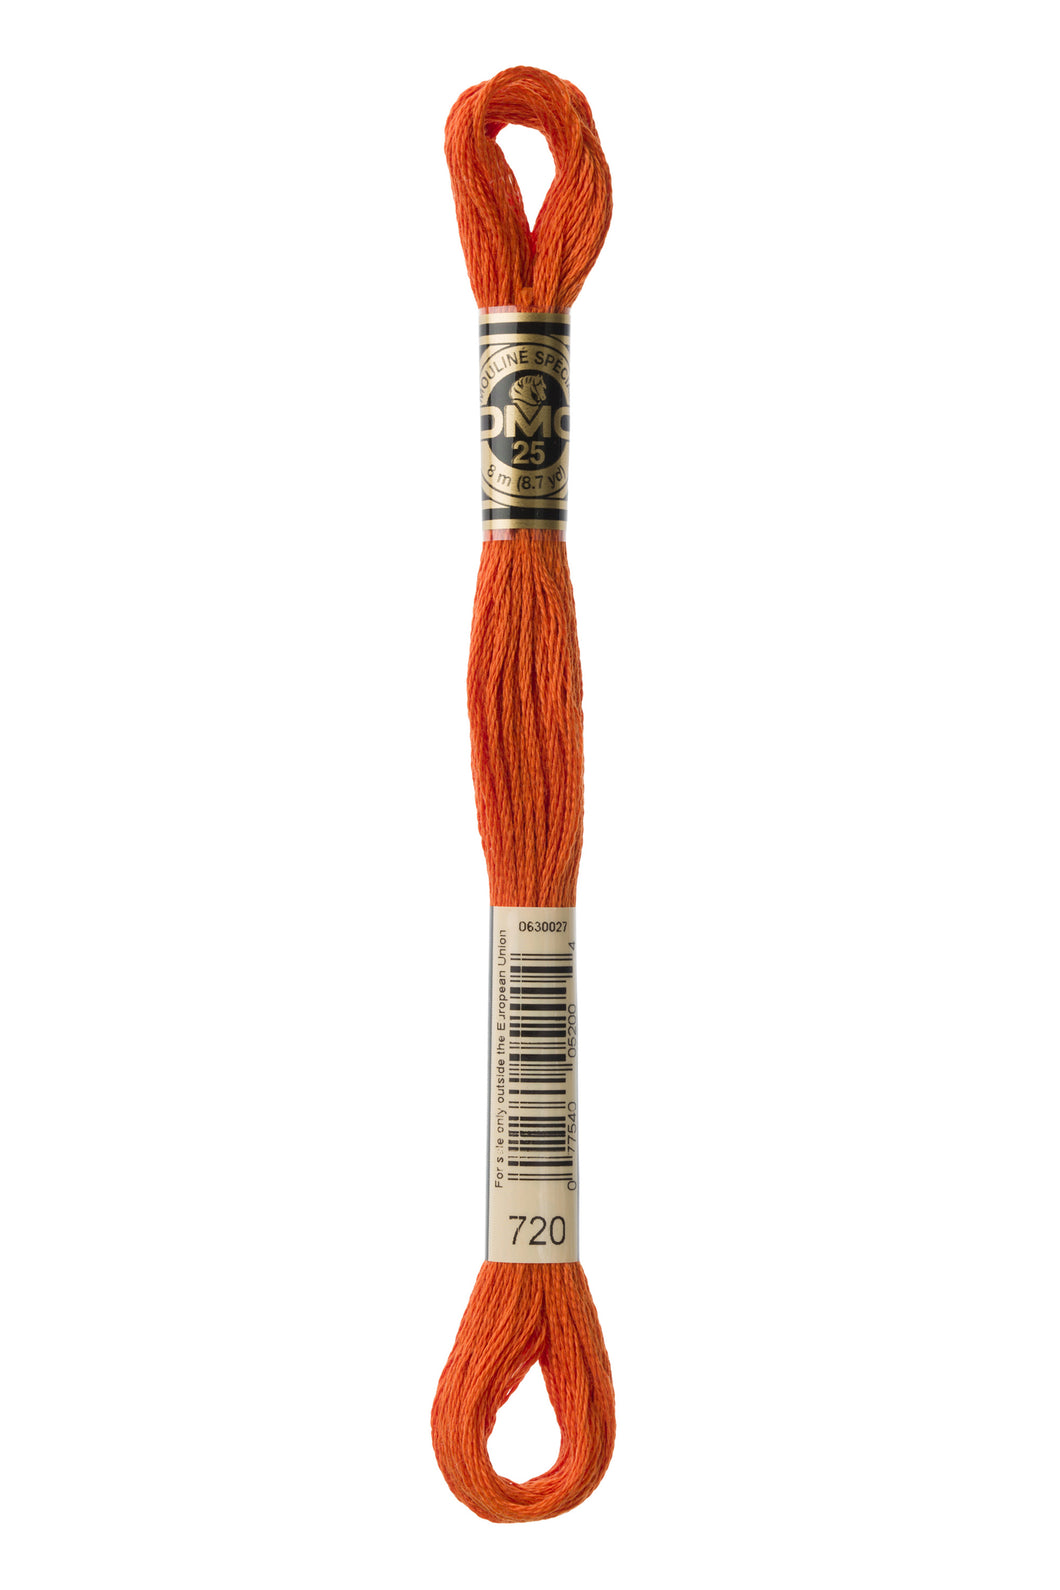 DMC 720 Dark Orange Spice 6-Strand Embroidery Floss